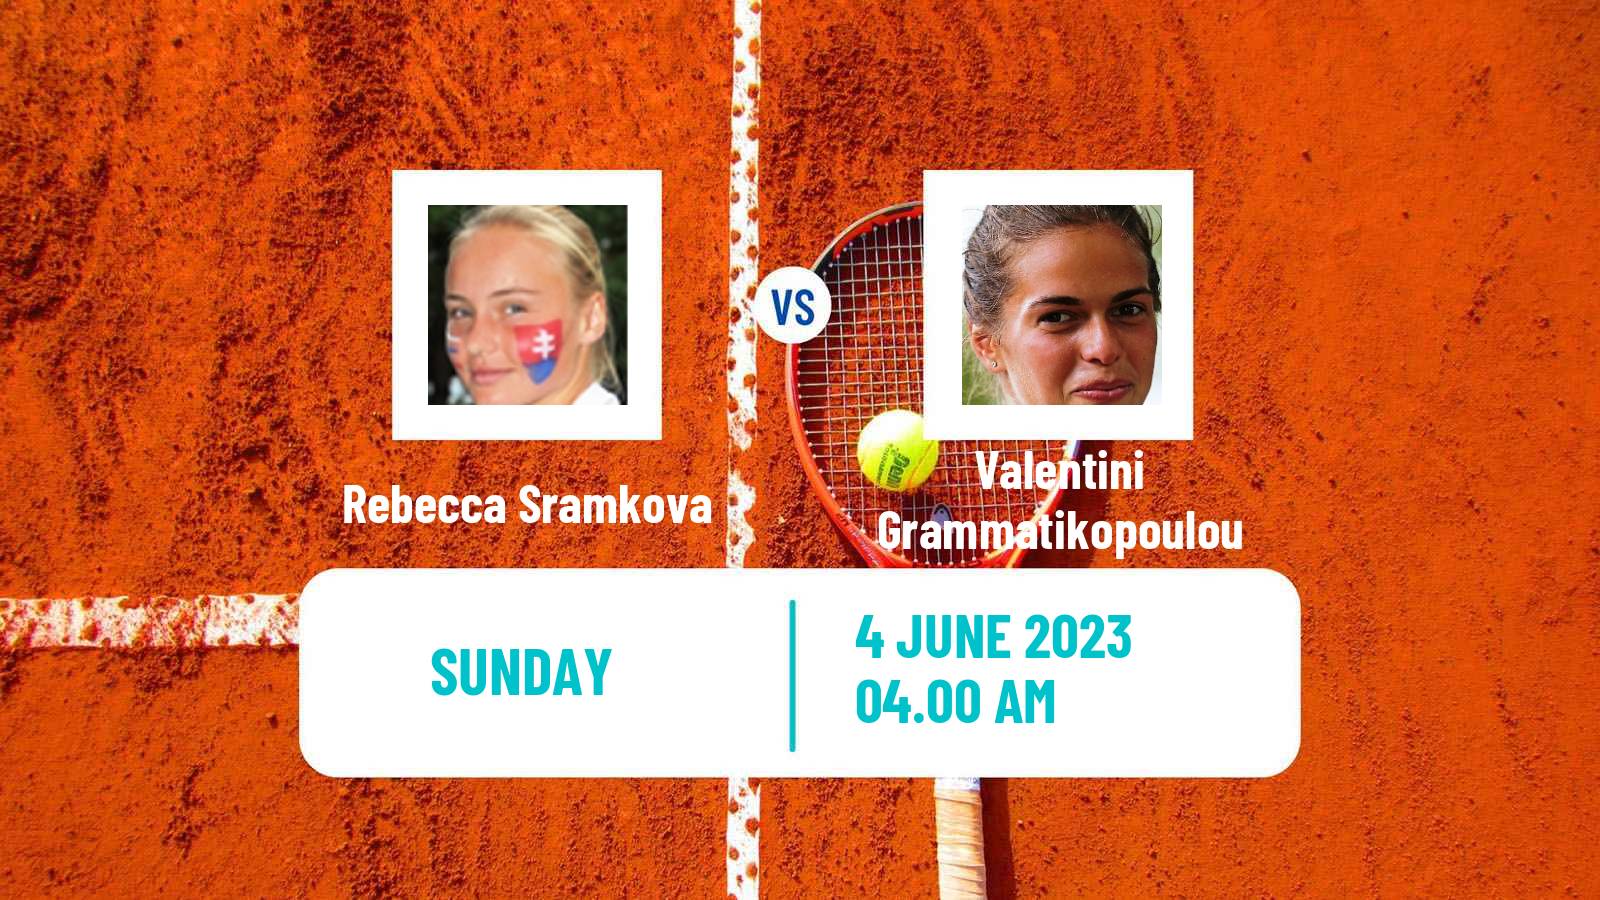 Tennis ITF W40 Otocec 2 Women Rebecca Sramkova - Valentini Grammatikopoulou